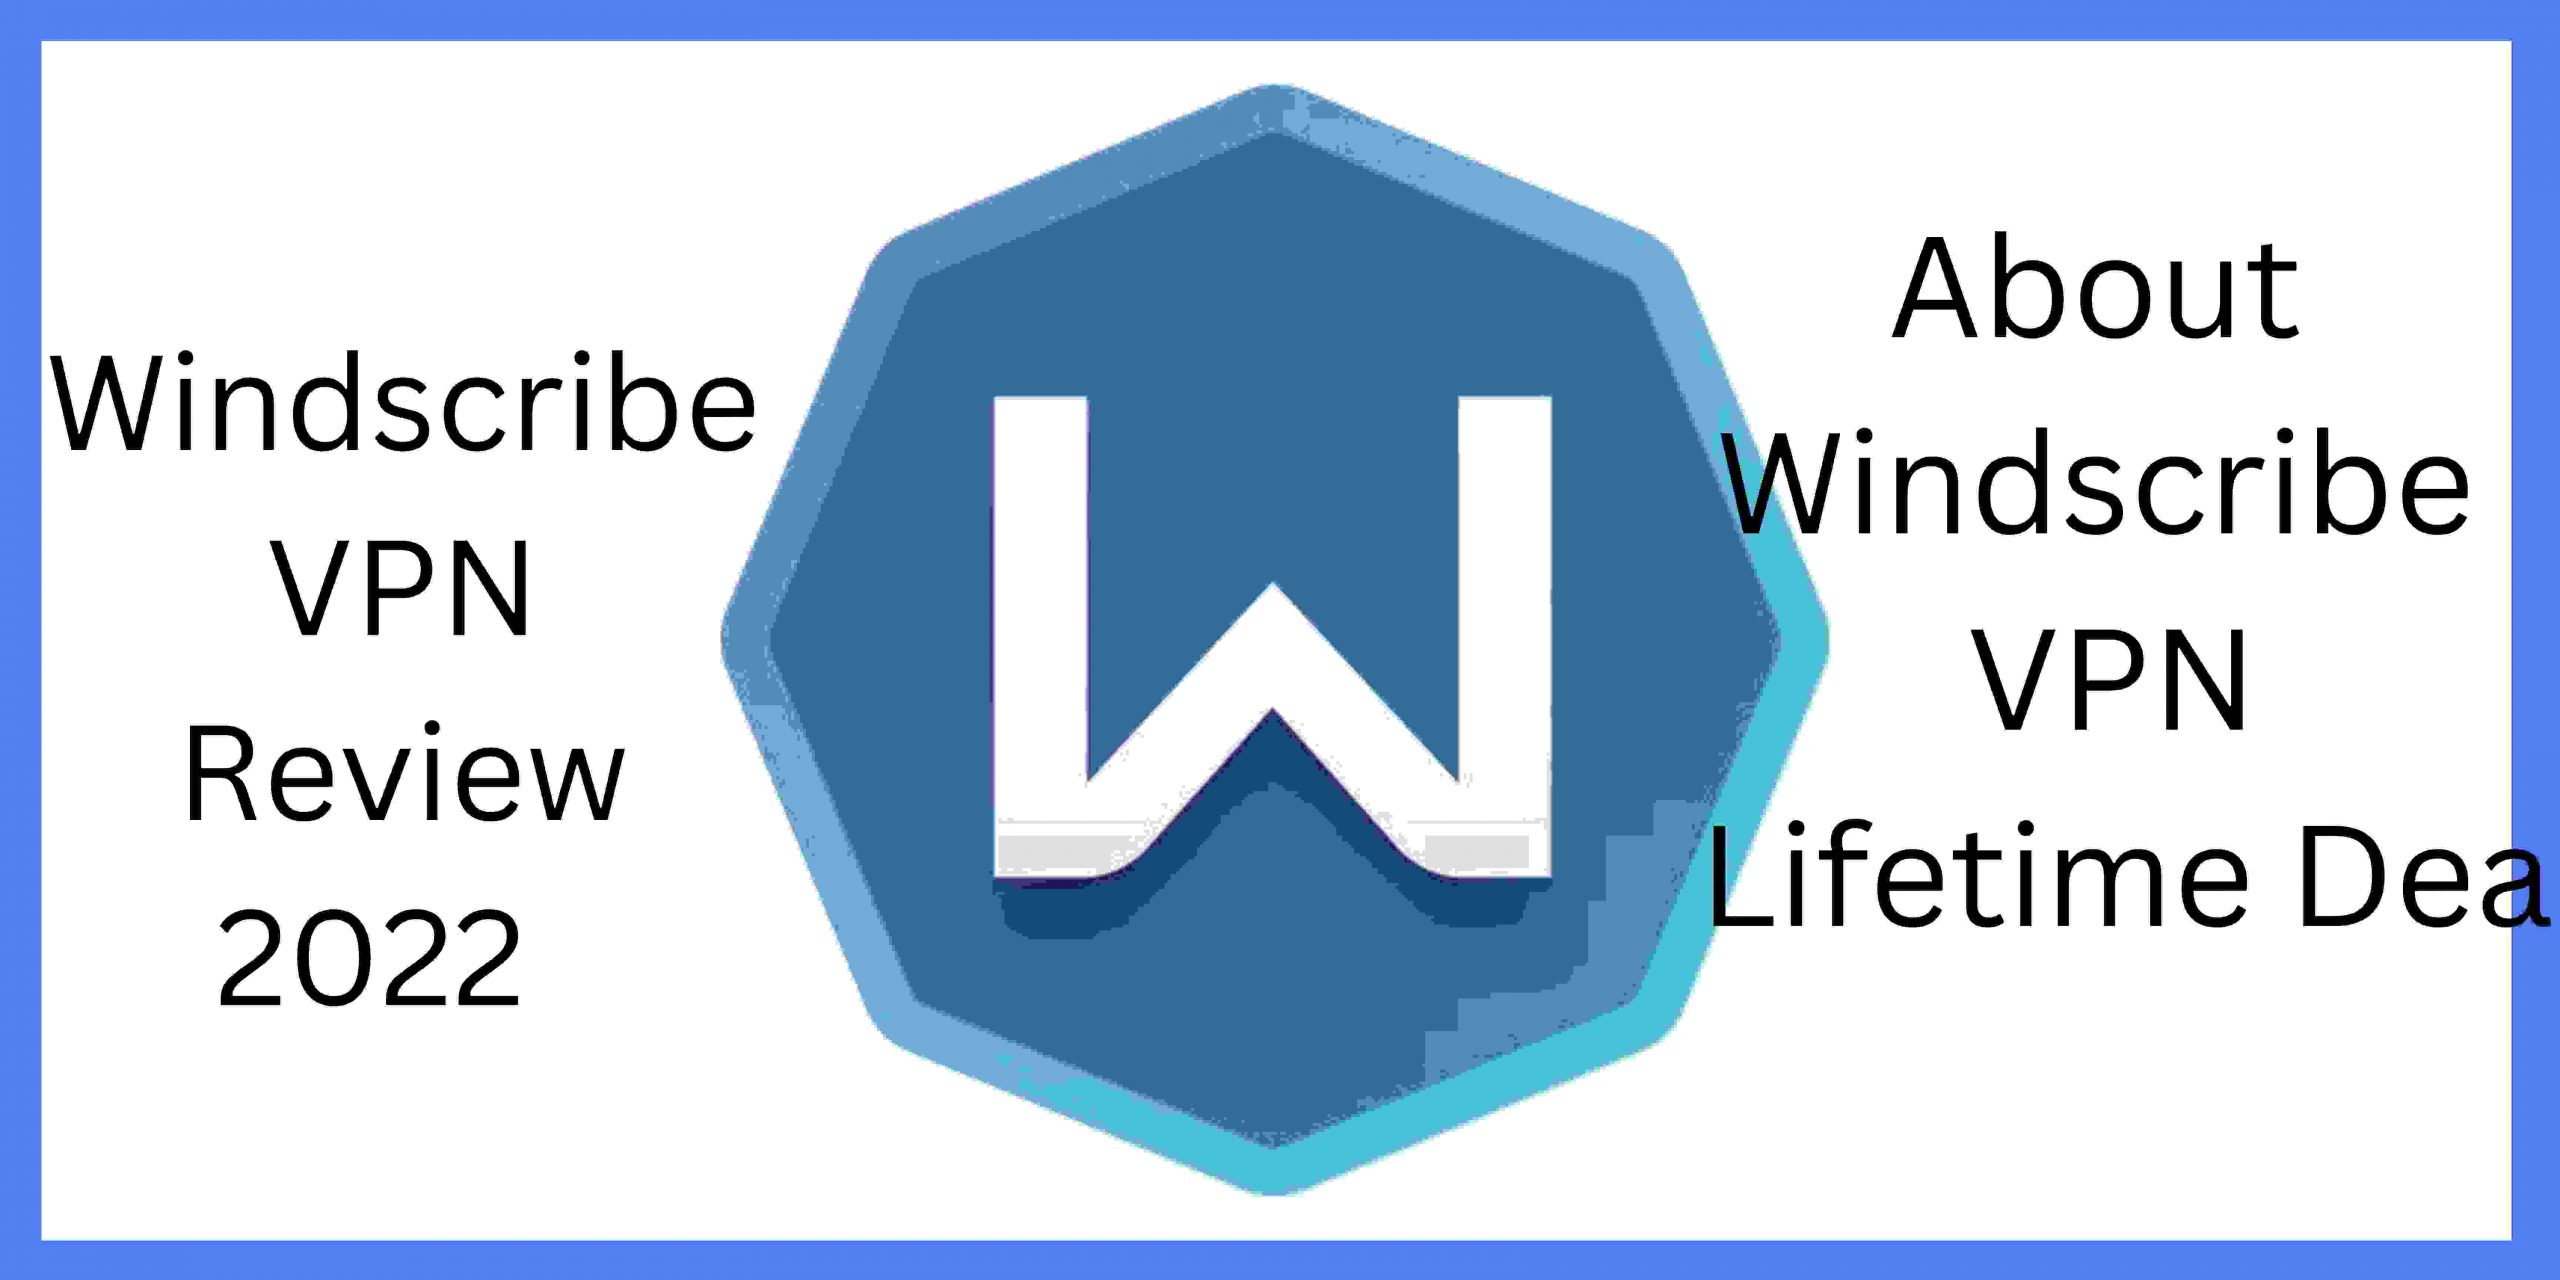 Windscribe VPN Review 2022 | About Windscribe VPN Lifetime Deal 